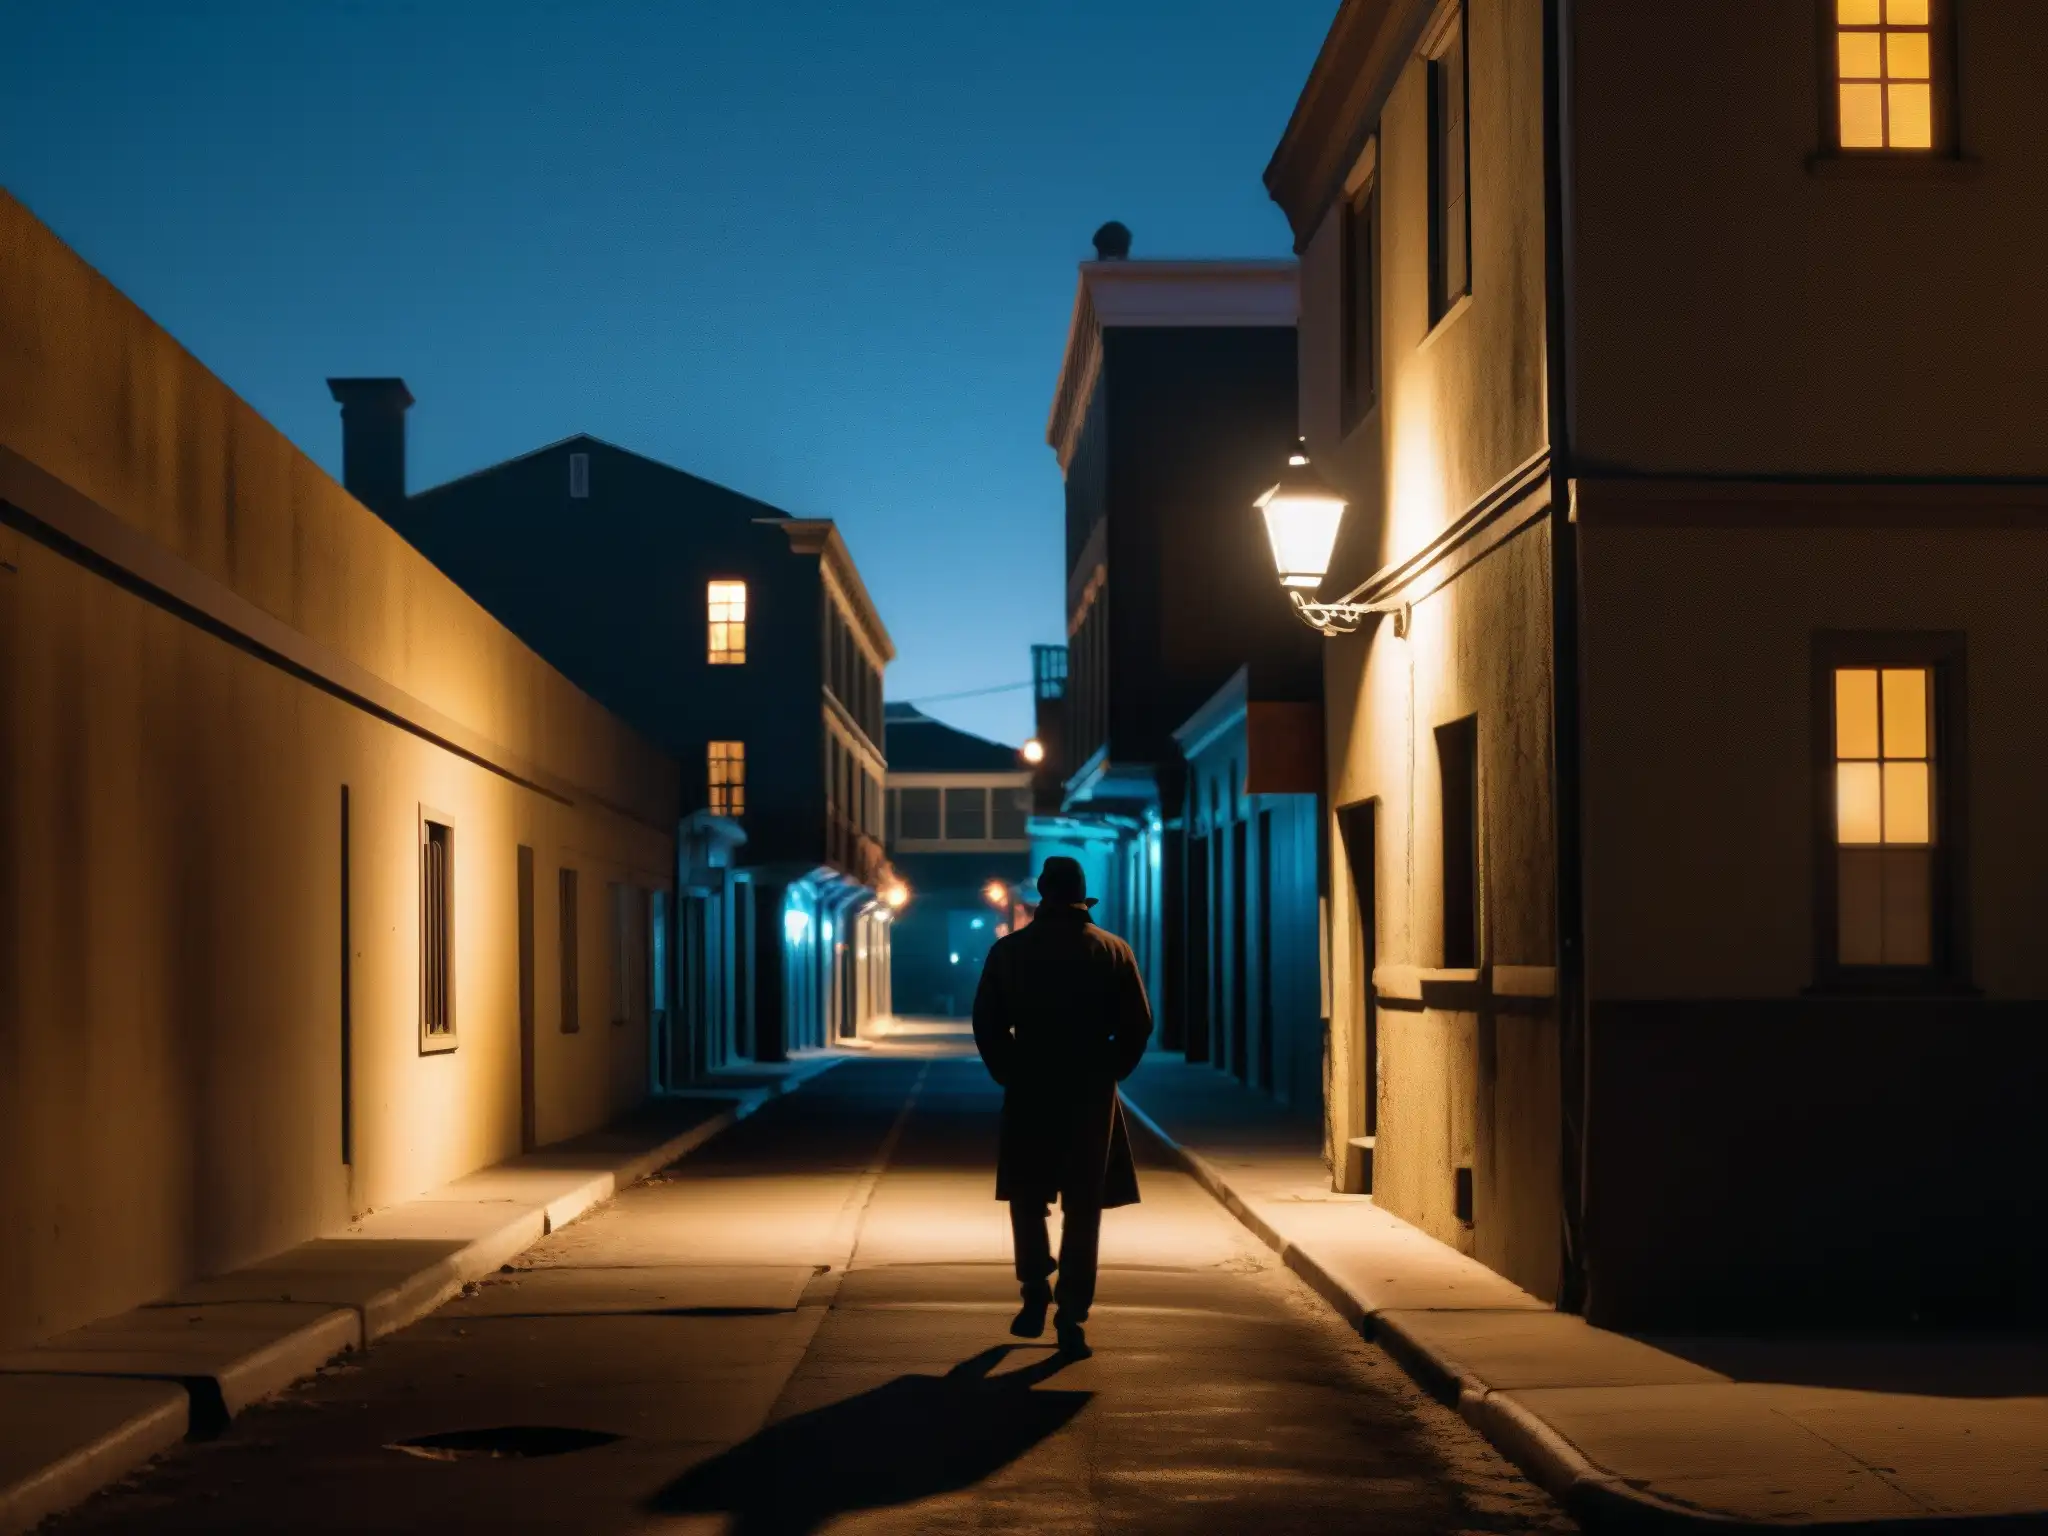 En la oscura y siniestra callejuela de Sacramento de noche, se vislumbra una figura solitaria entre sombras, rodeada de edificios decrépitos